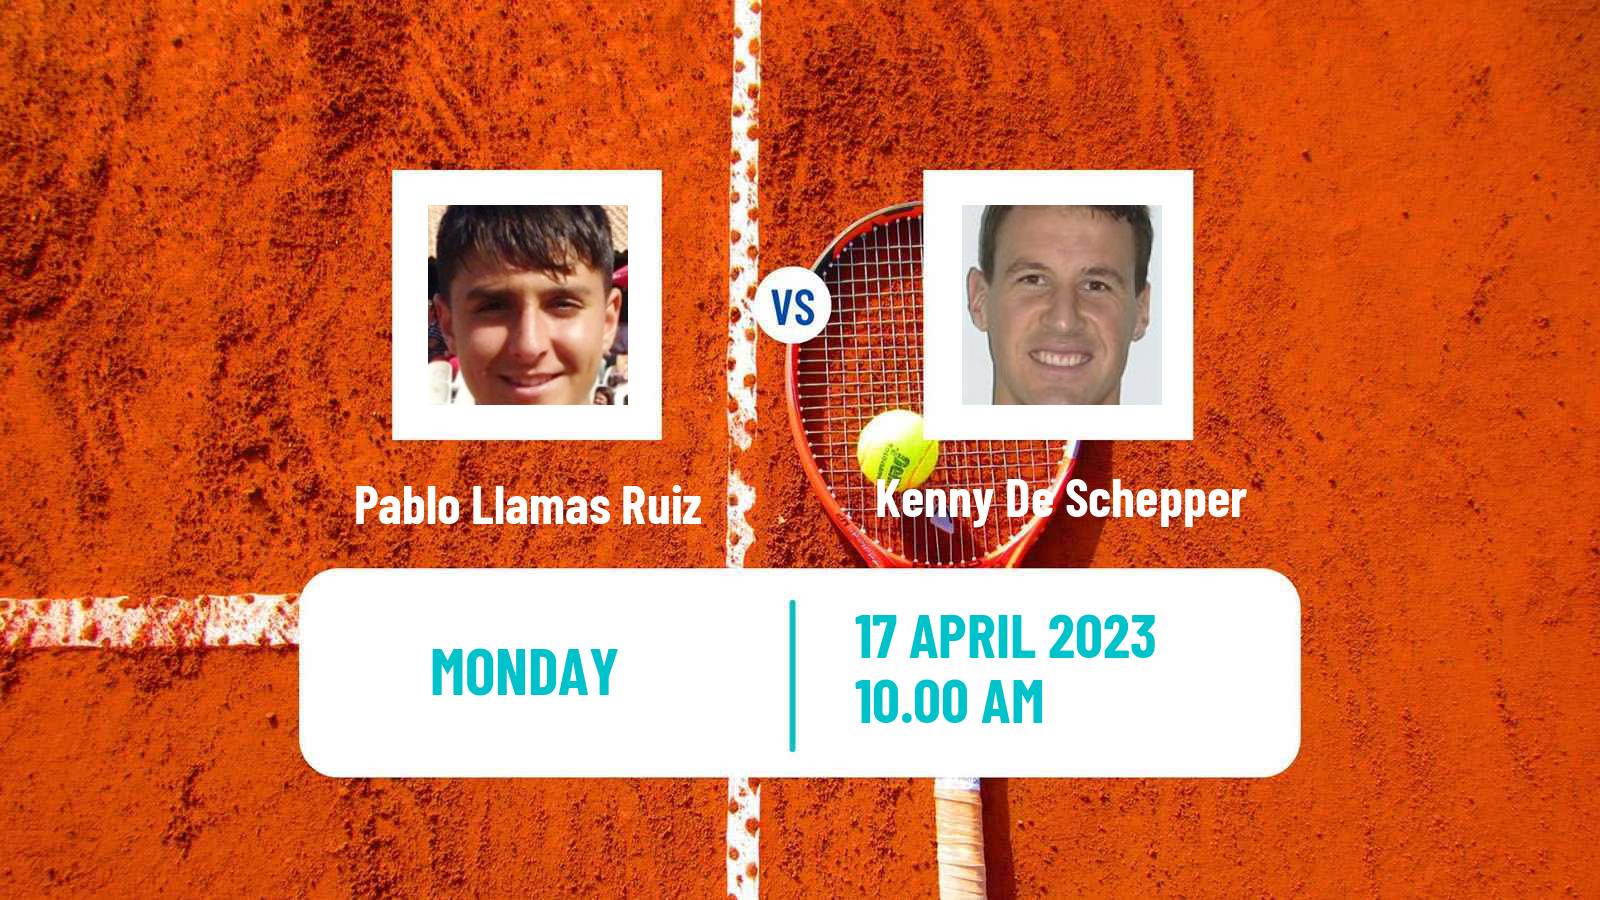 Tennis ATP Challenger Pablo Llamas Ruiz - Kenny De Schepper